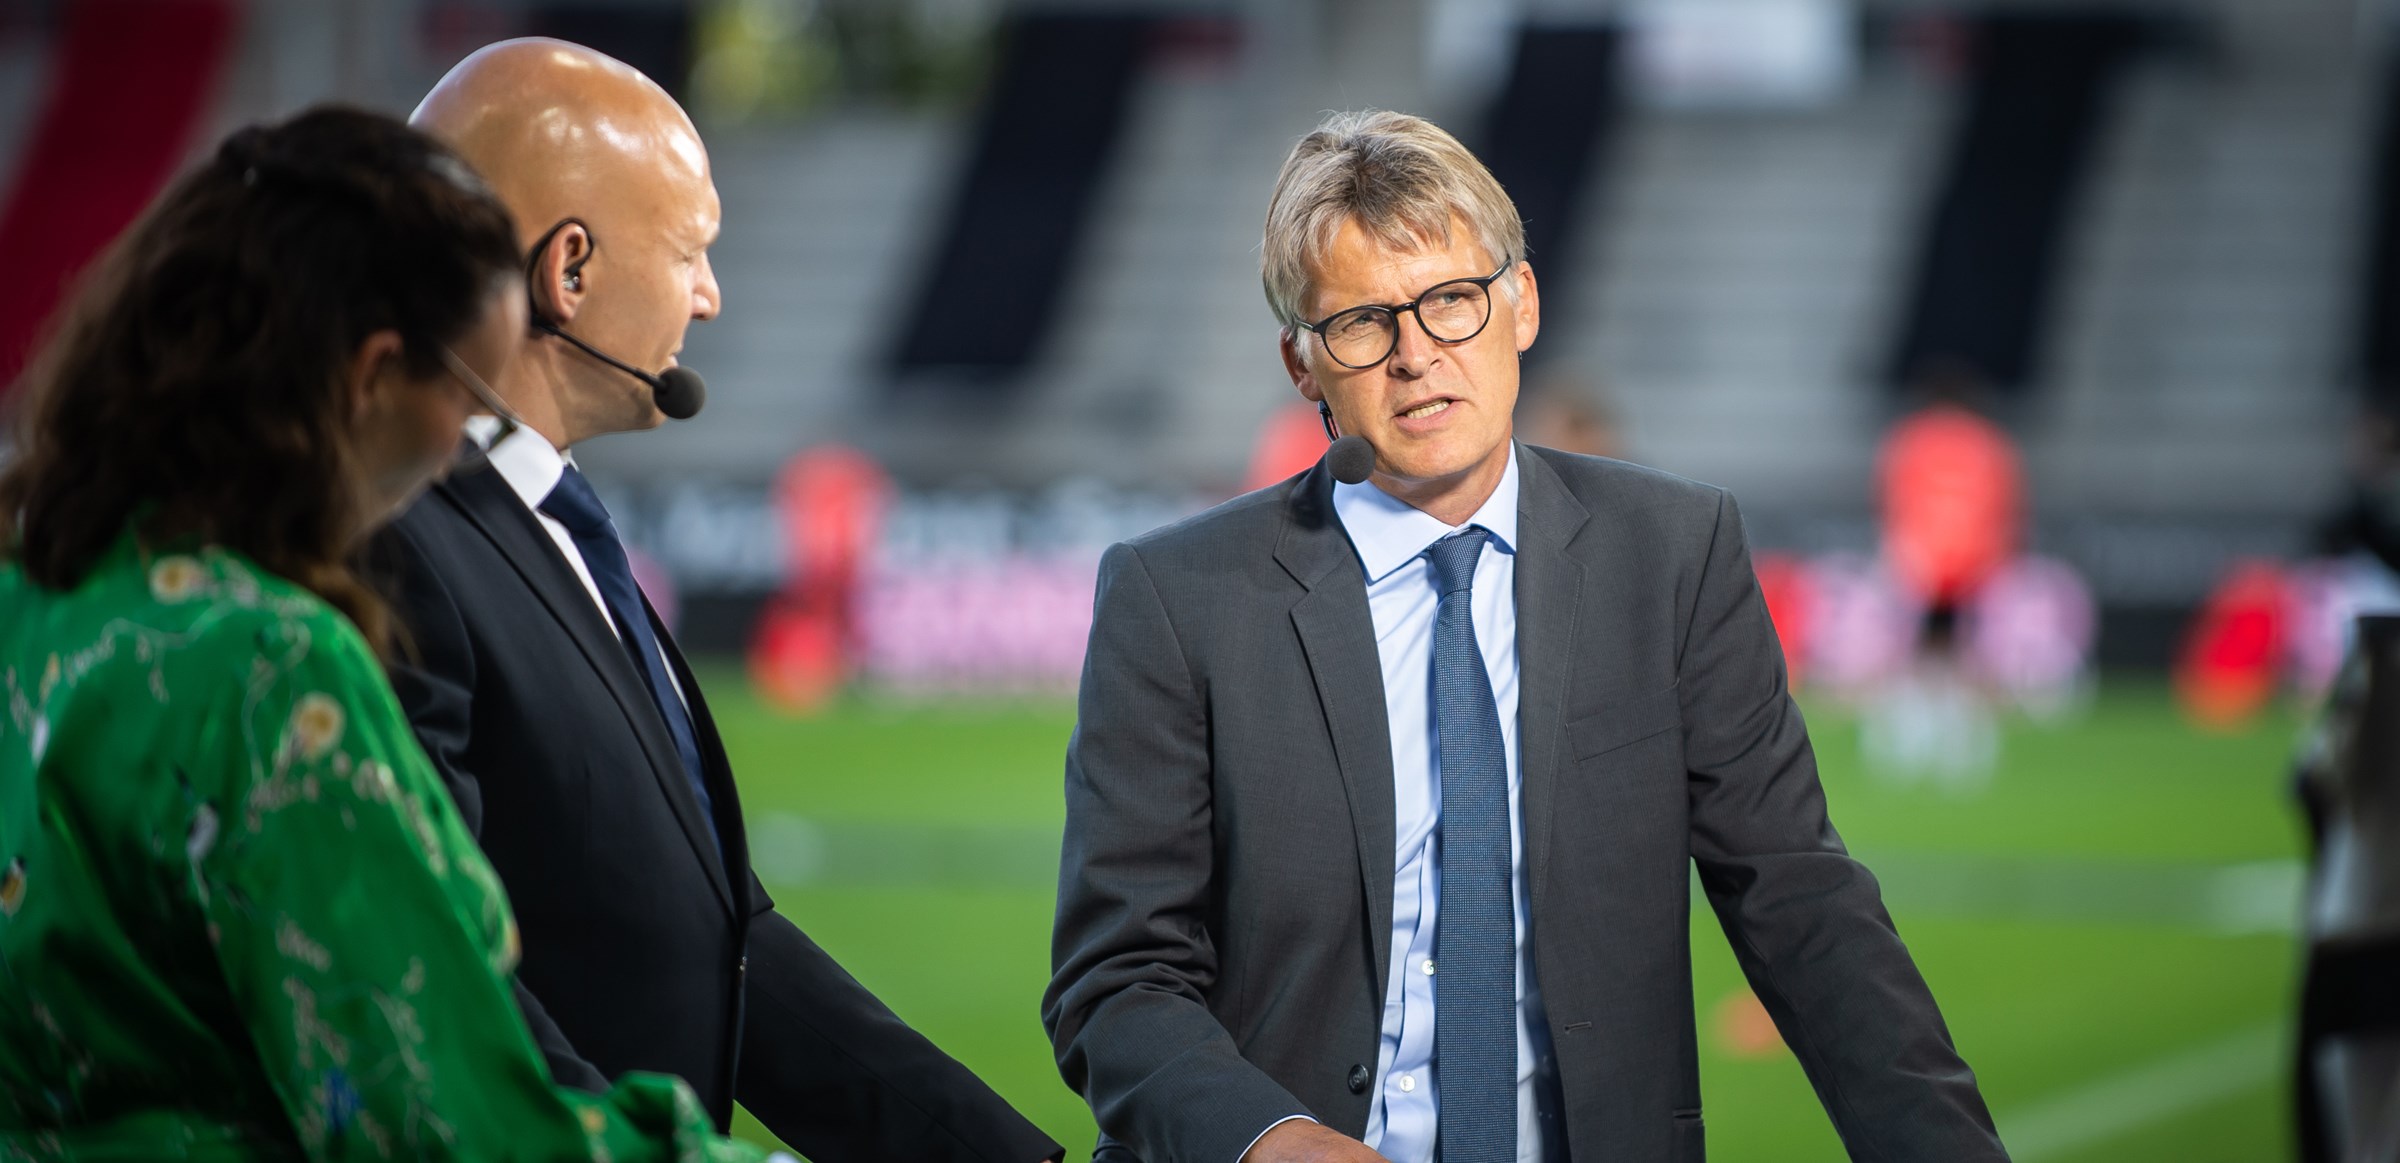 Morten Bruun på job i MCH Arena i 2020 i forbindelse med superligakampen mellem FC Midtjylland og AGF. (Foto: Morten Kjær Gonzales / Ritzau Scanpix / TV 2)